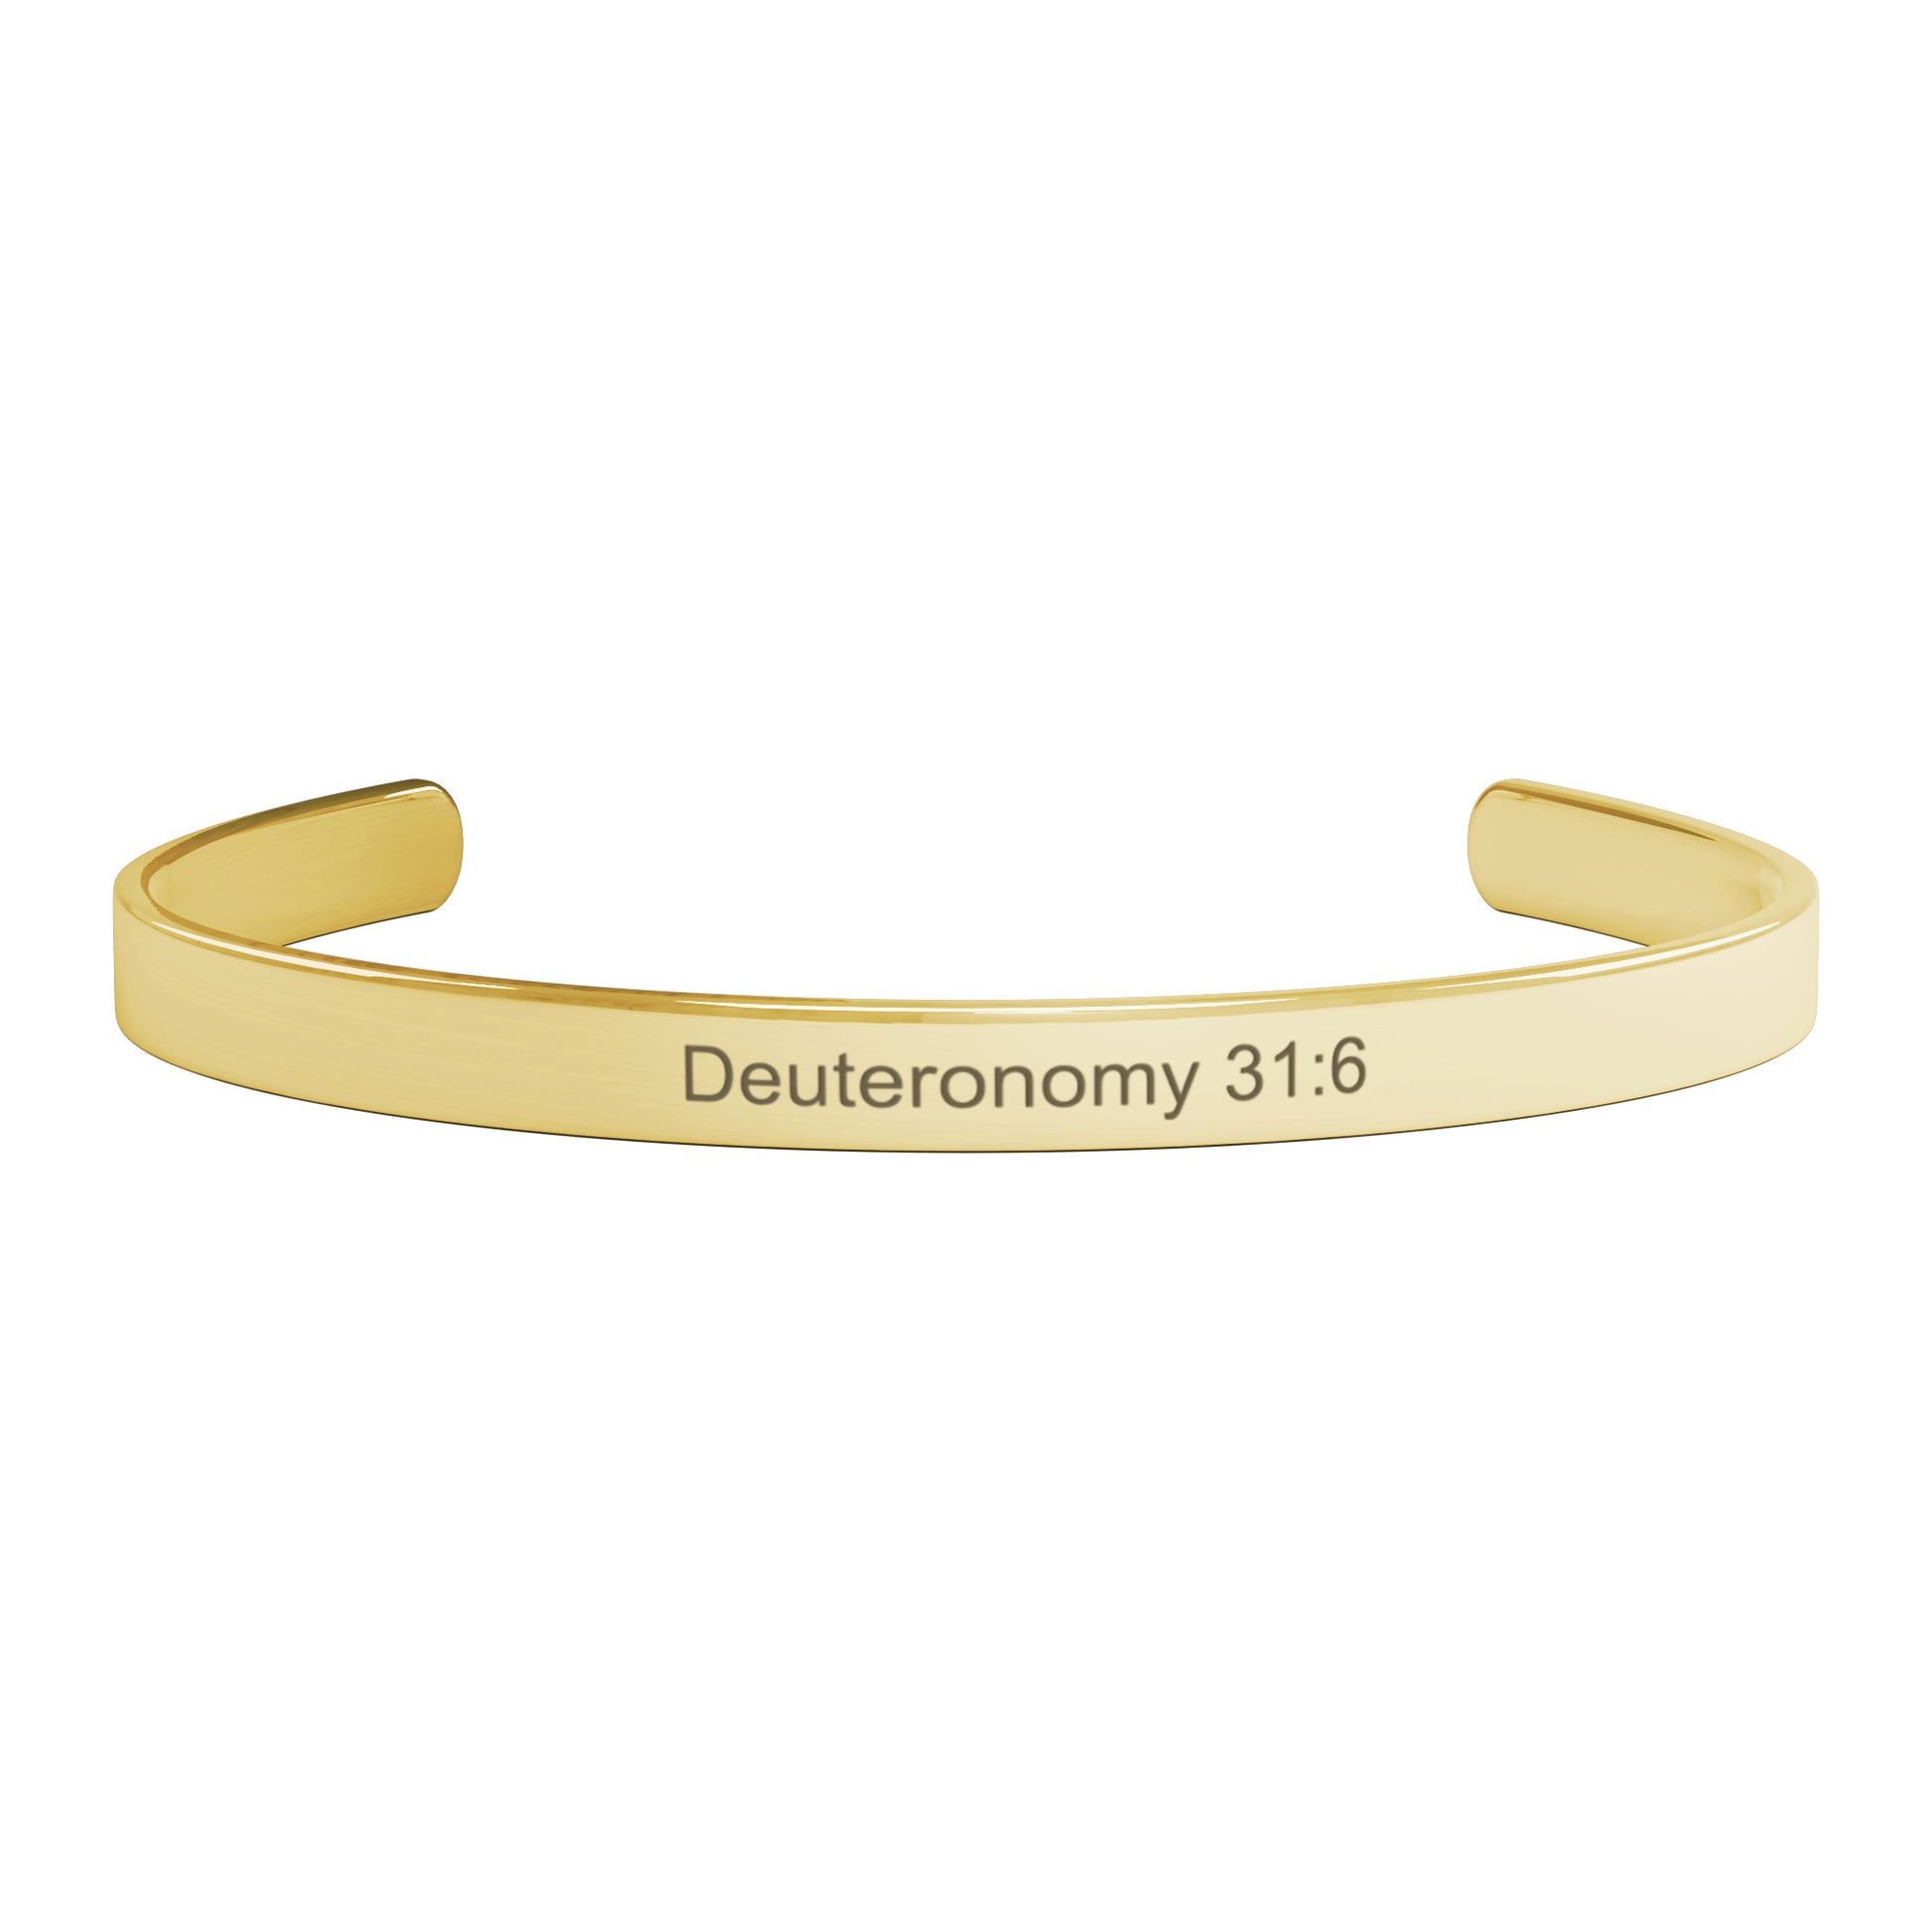 Deuteronomy 31:6 Jewelry teelaunch   